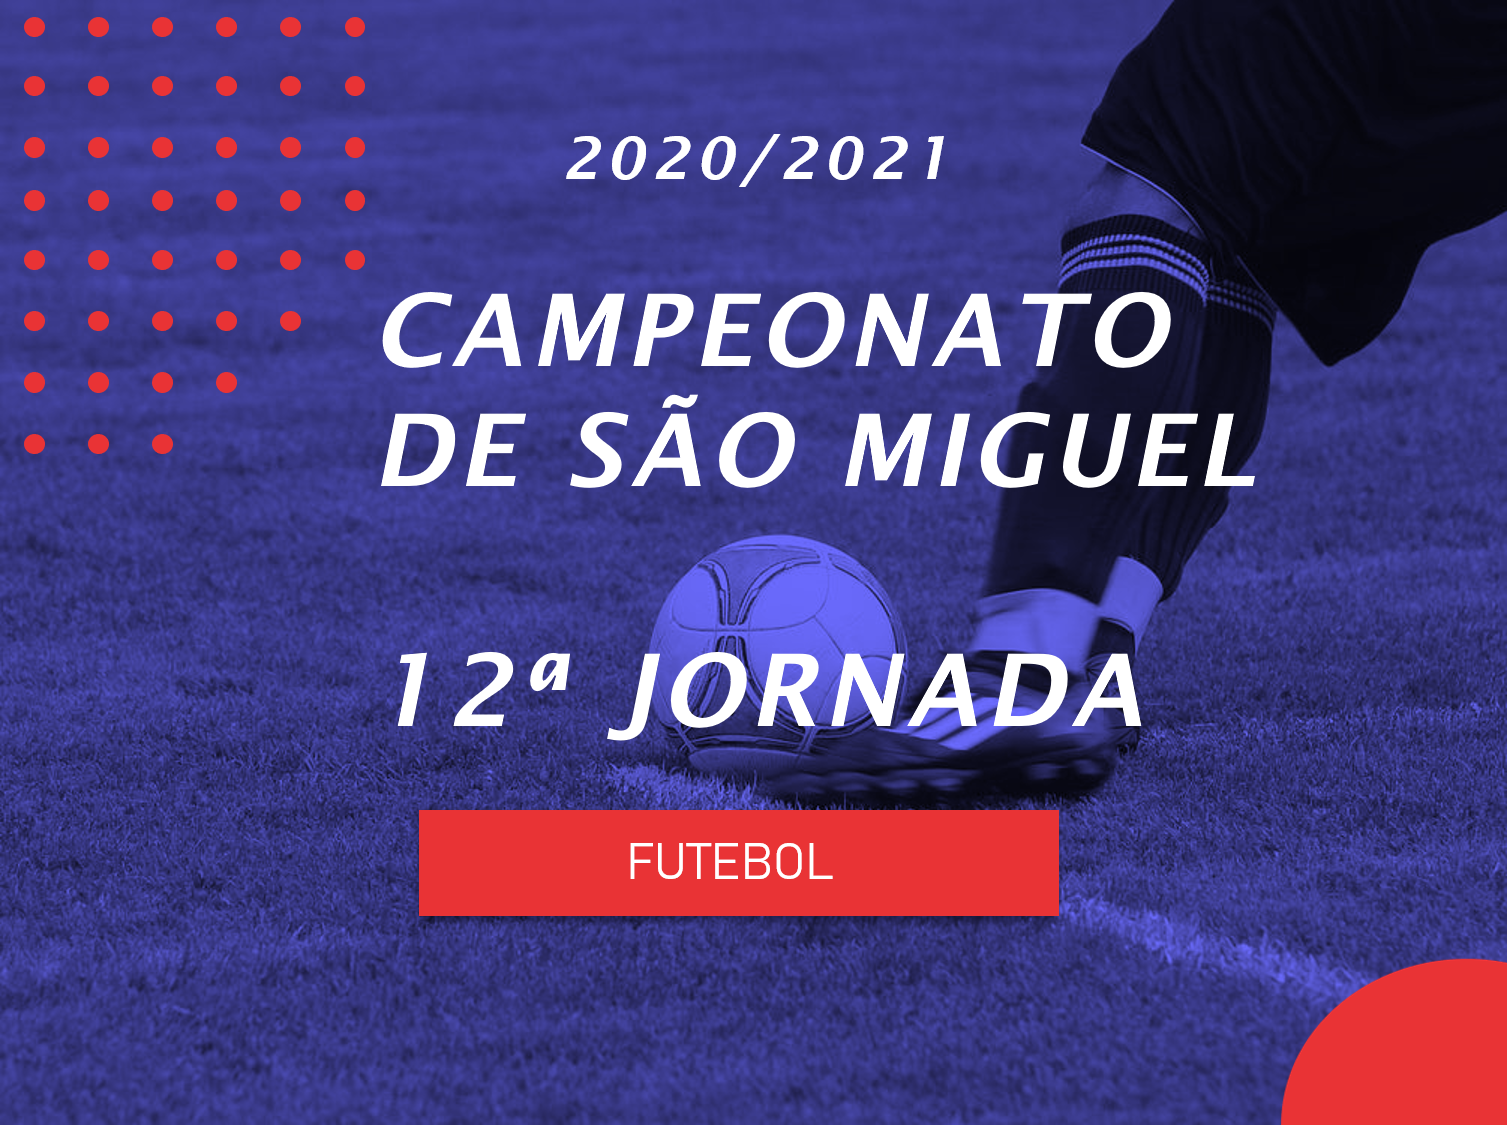 Campeonato de São Miguel - 12ª Jornada - Antevisão